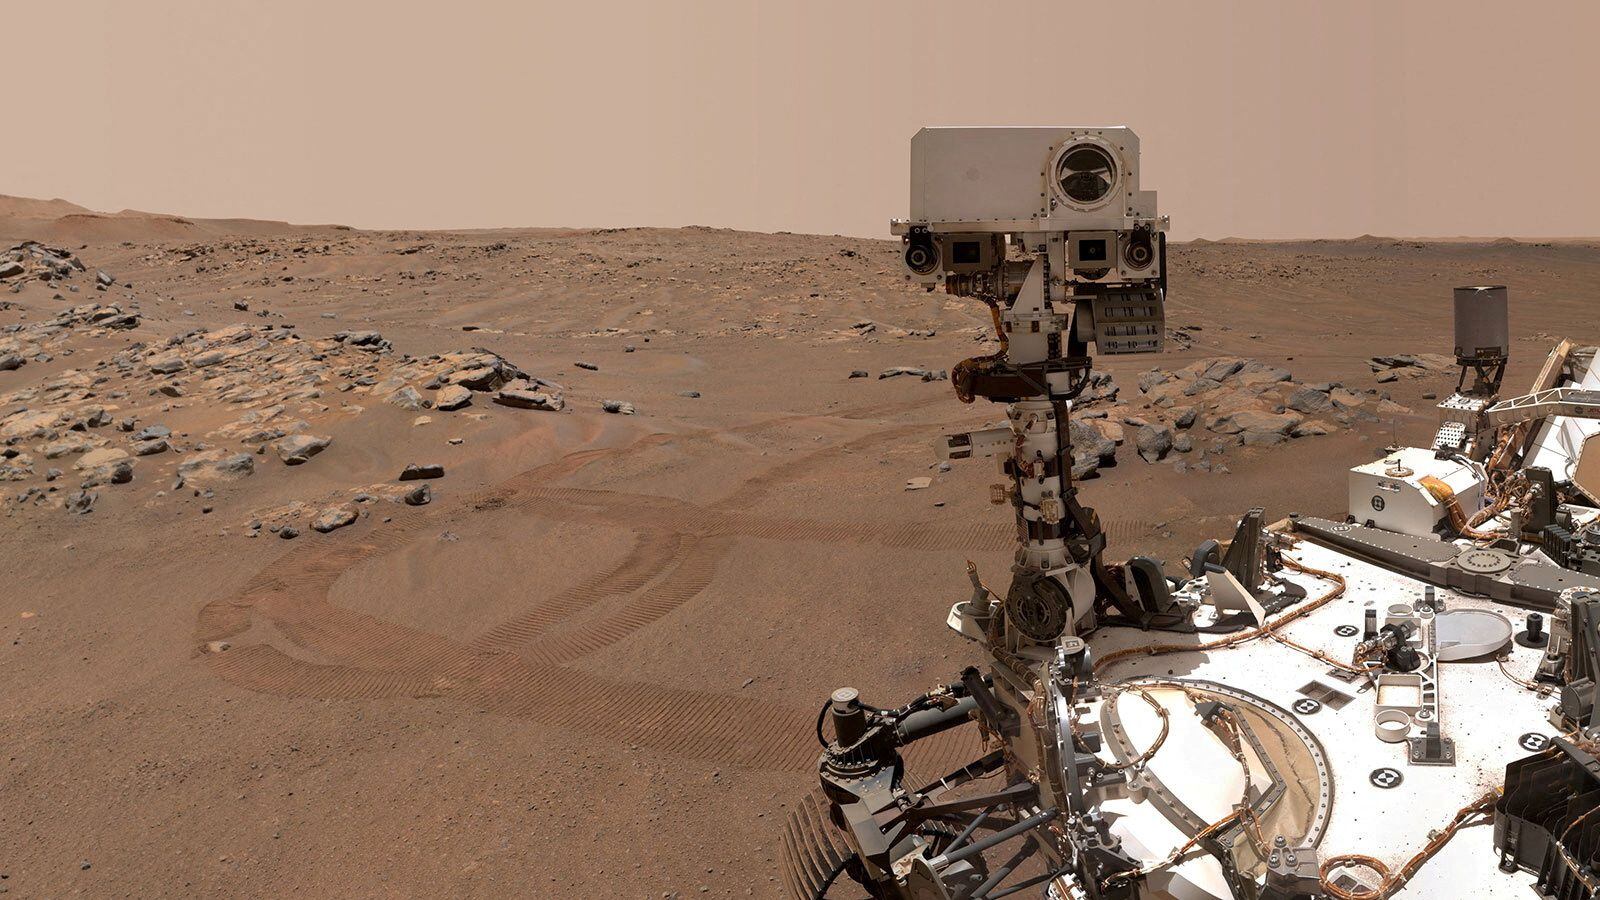 Perseverance es un vehículo explorador de la NASA enviado a Marte en el marco de la misión Mars 2020. NASA/JPL-CALTECH/MSSS/Handout via REUTERS/File Photo